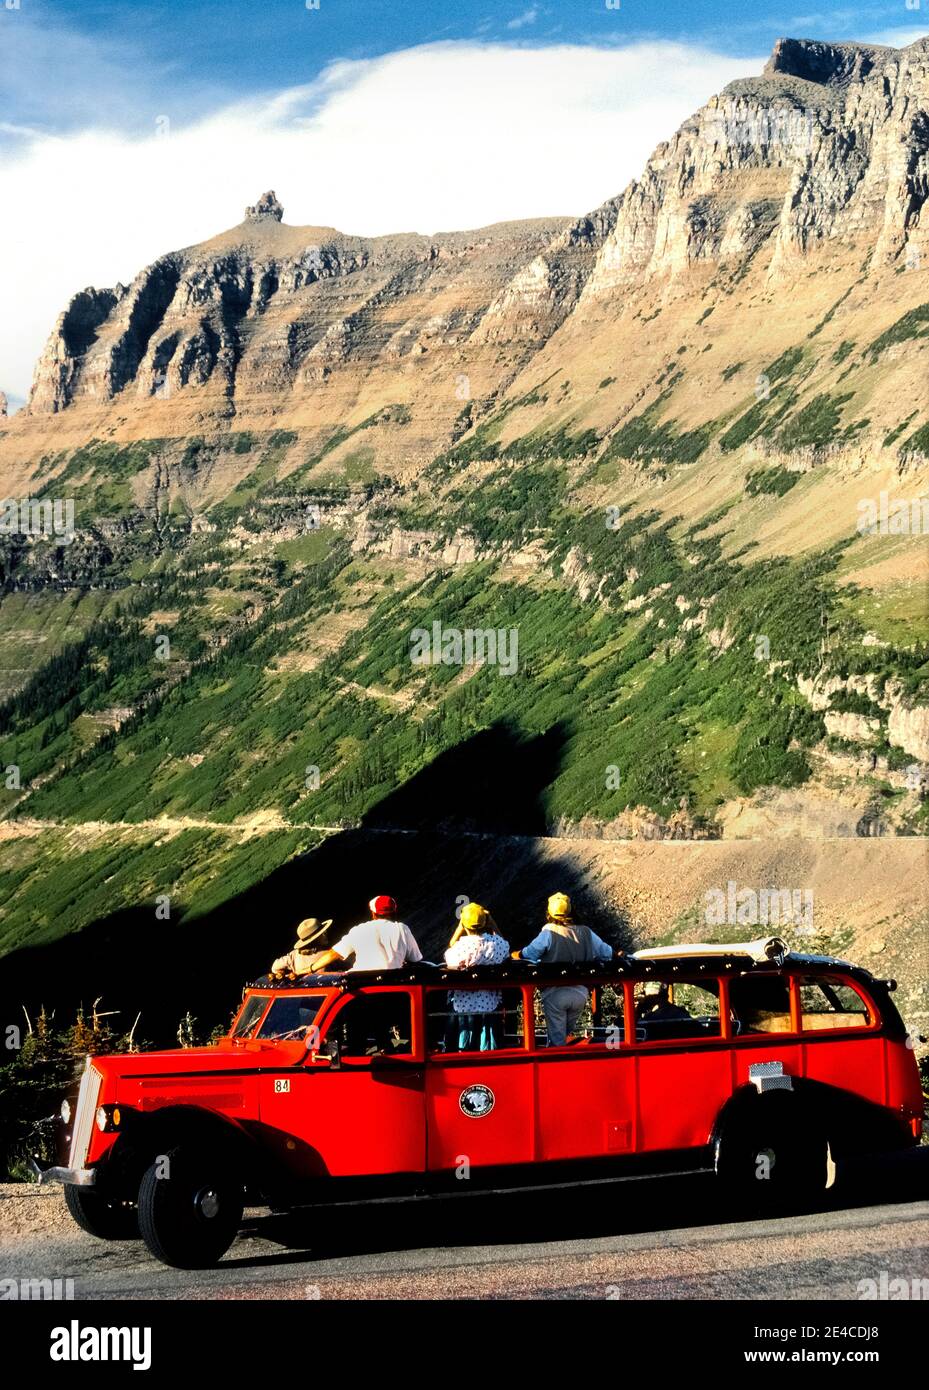 Este largo autobús turístico rojo de los años 30 ofrece un techo de lona que se abre para proporcionar vistas panorámicas de impresionantes picos de montaña para los turistas en excursiones escénicas a lo largo de la carretera Going-to-the-Sun en el Parque Nacional Glacier en el noroeste de Montana, EE.UU. El vehículo de 17 pasajeros se encuentra entre la flota del parque de 33 autobuses idénticos que se conocen como Red Jammers porque sus conductores "atascan" las marchas al cambiar las transmisiones manuales en las empinadas carreteras montañosas. Todos esos modelos históricos de la White Motor Company N° 706 han sido restaurados a su aspecto original. Foto de stock